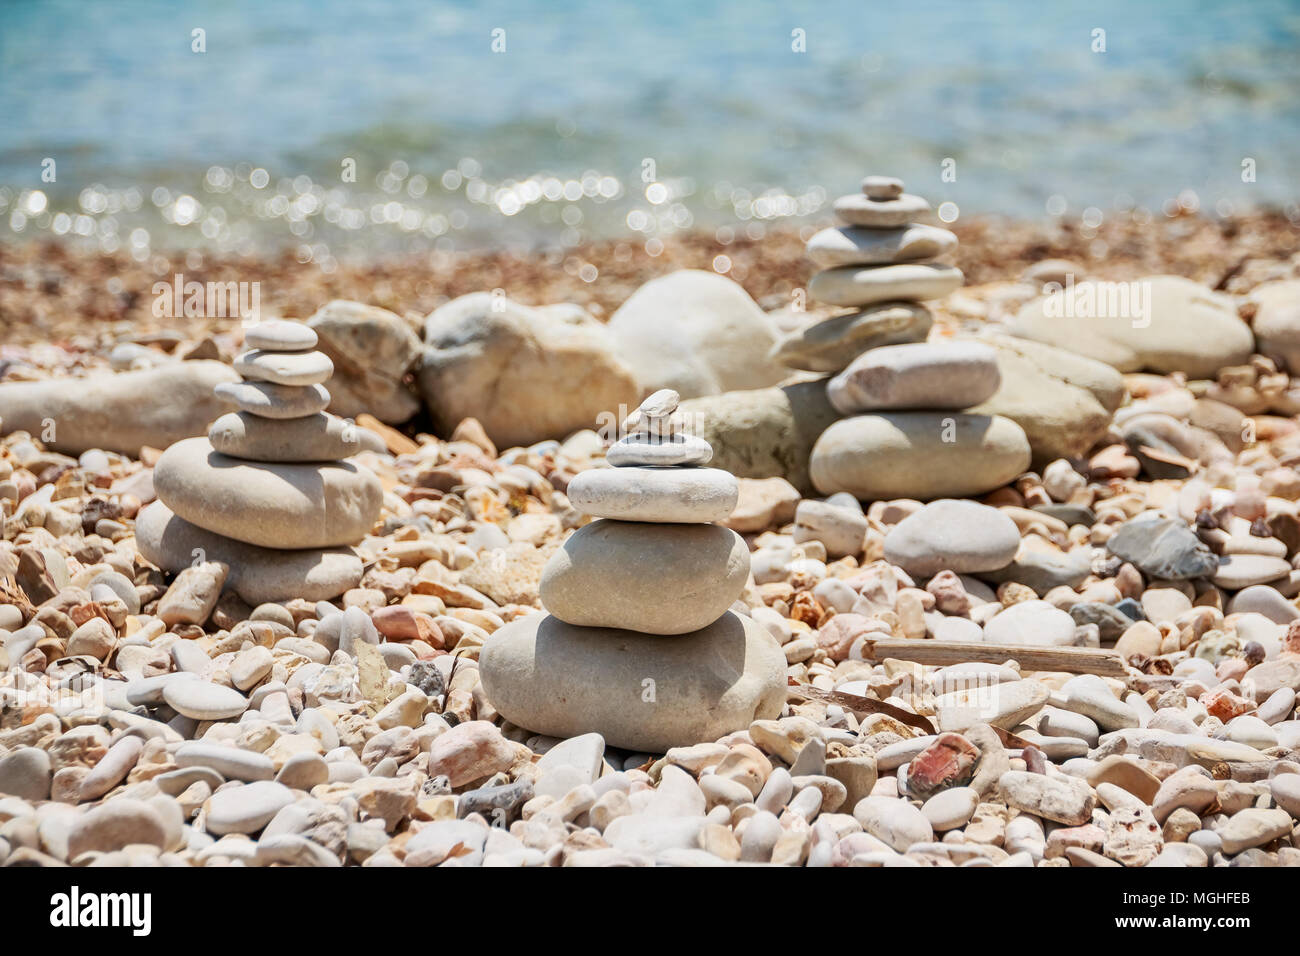 Stapel Steine am meer sommer Strand. Der Haufen der Kieselsteine auf dem steinigen Küste. Steine Pyramide auf Pebble Beach symbolisiert Stabilität, Zen, Harmonie, Balance. Tropische Meer Strand. Ferienhäuser Konzept Stockfoto